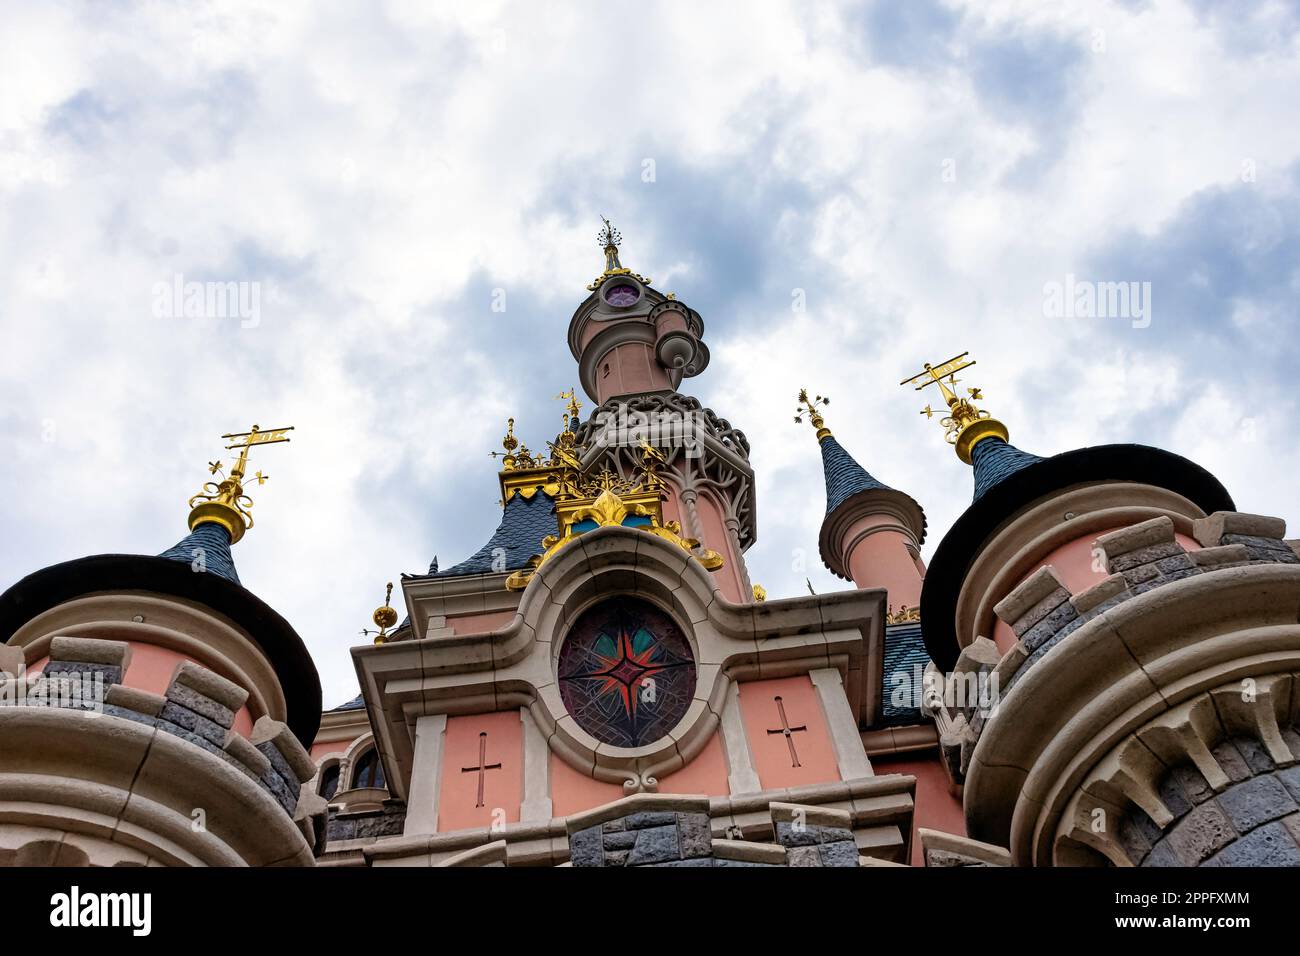 Castello della bella addormentata - Disneyland Paris, Chessy, Francia Foto Stock